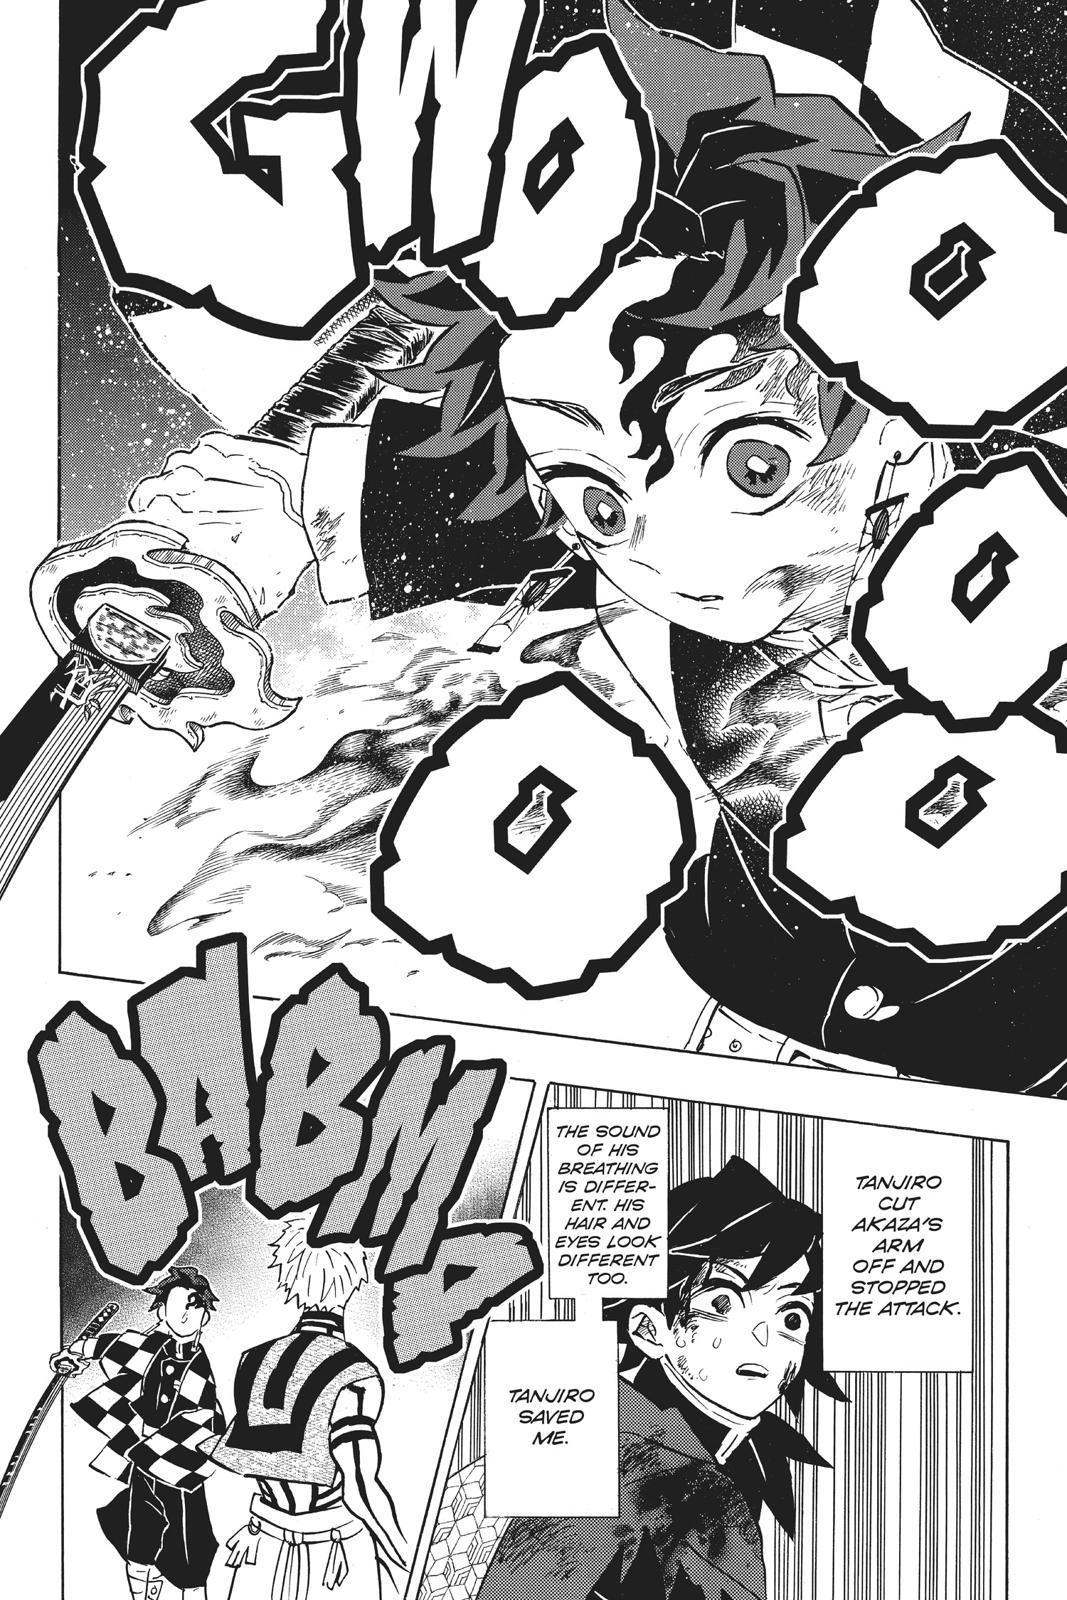 Demon Slayer Manga Manga Chapter - 152 - image 8